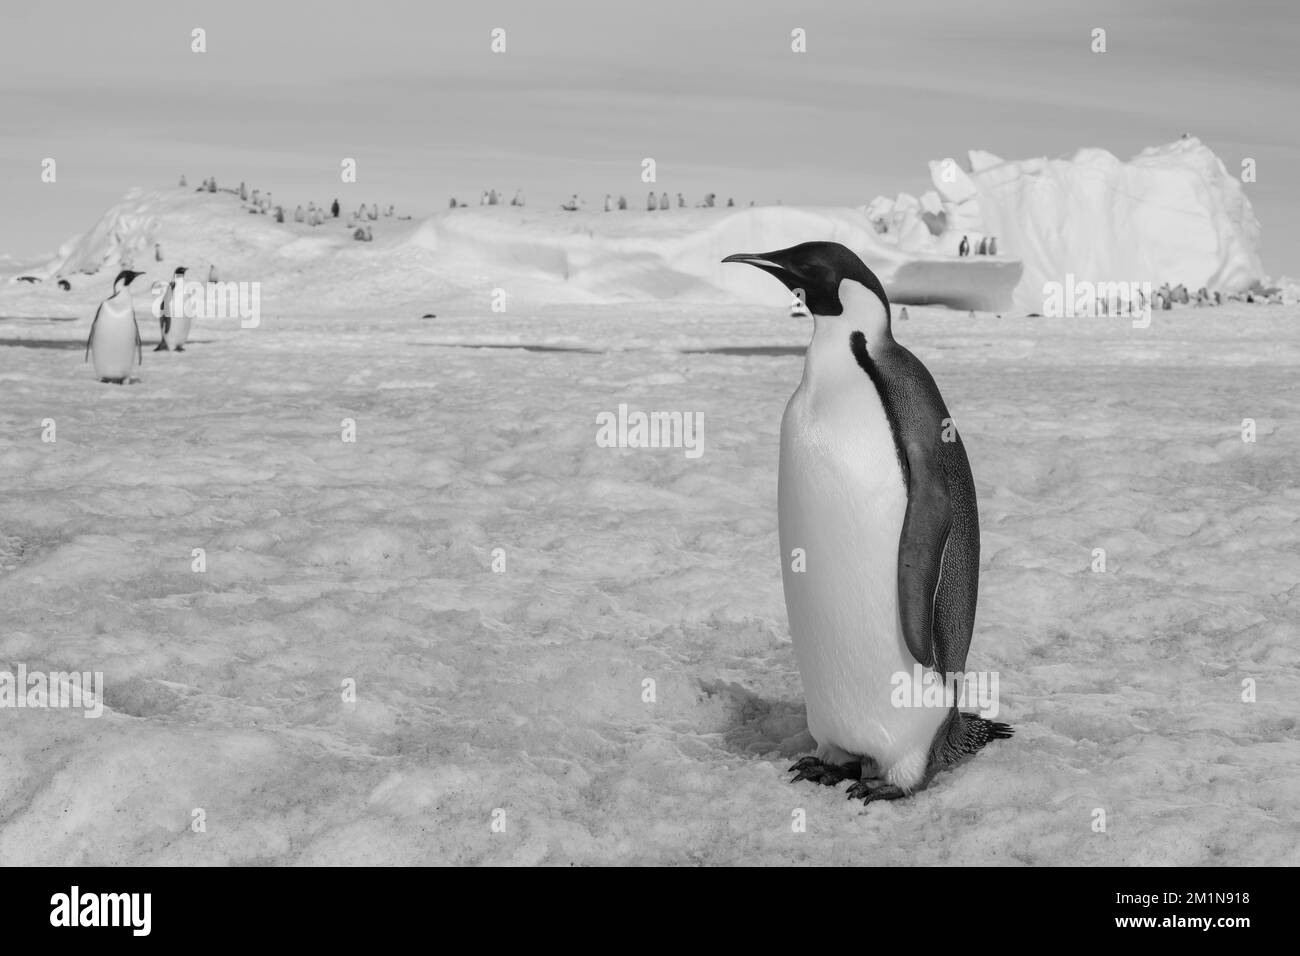 Antartide, Mare di Weddell, Isola di Snow Hill, colonia di Snow Hill. Pinguino imperatore (Aptenodytes fosteri) su ghiaccio, colonia con pulcini in lontananza. Nero & Foto Stock